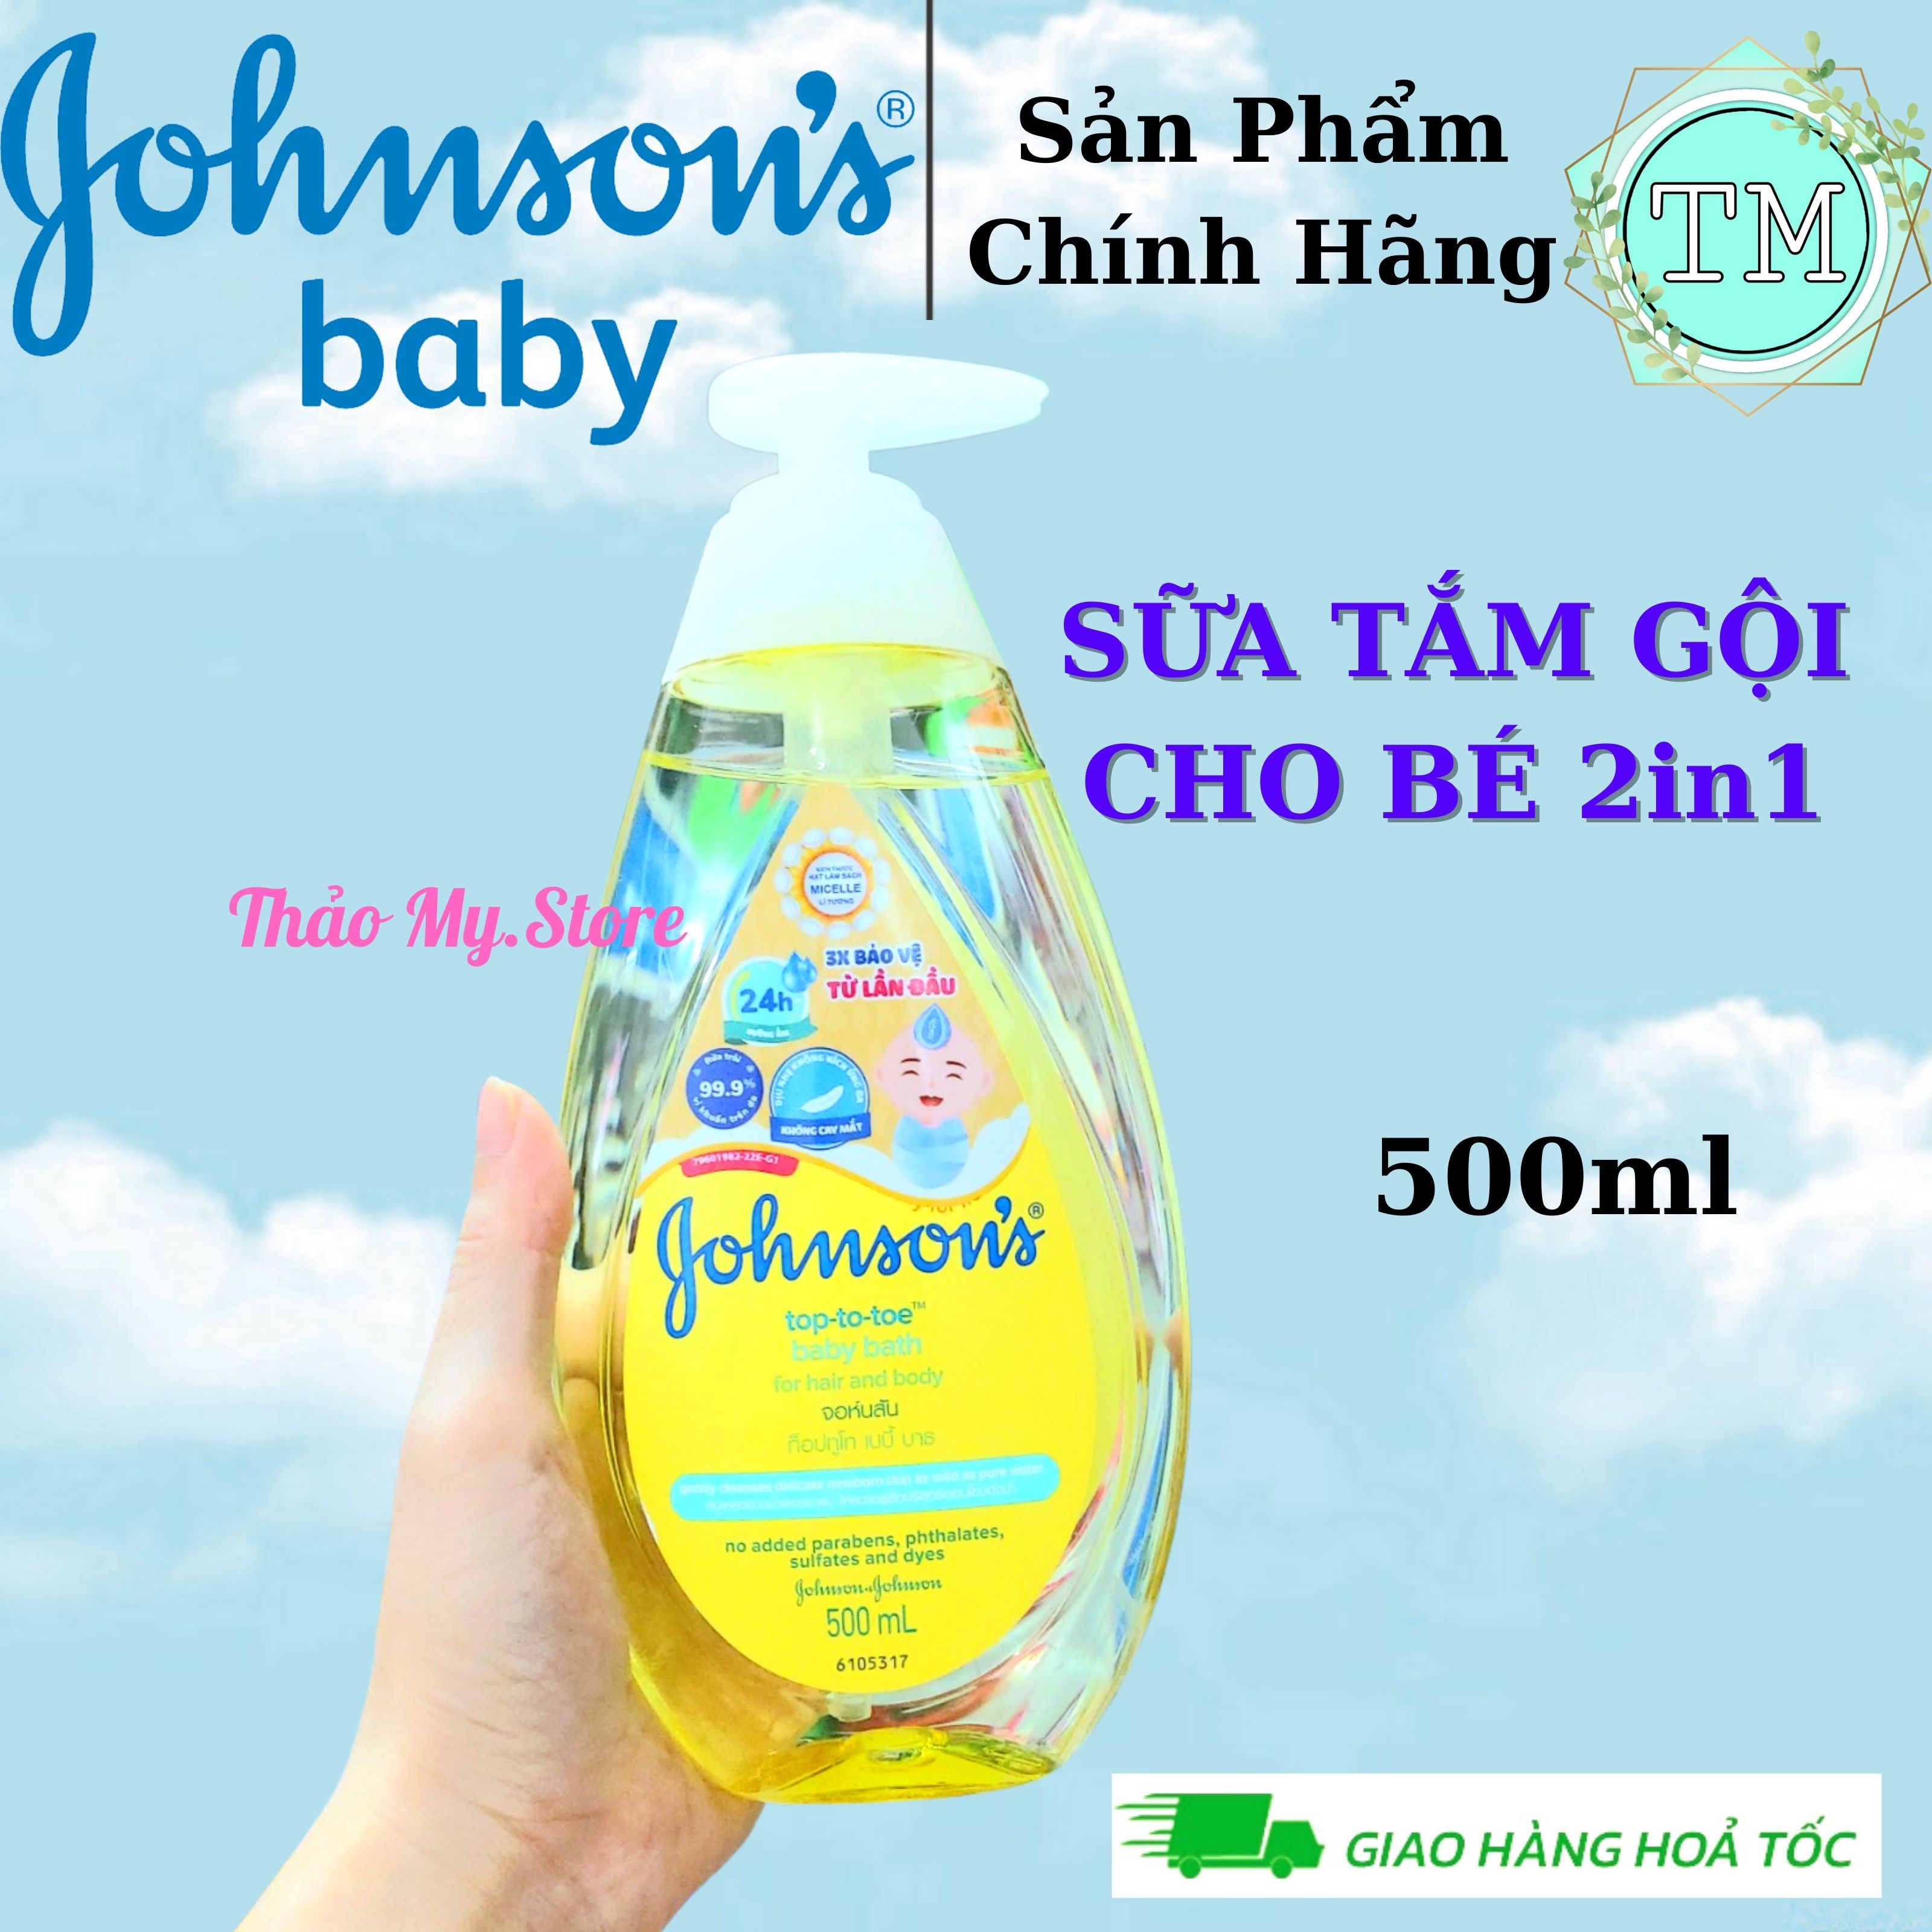 Sữa Tắm Gội Toàn Thân Cho Trẻ Em Johnson s 500ml - Dịu Nhẹ Cho Bé